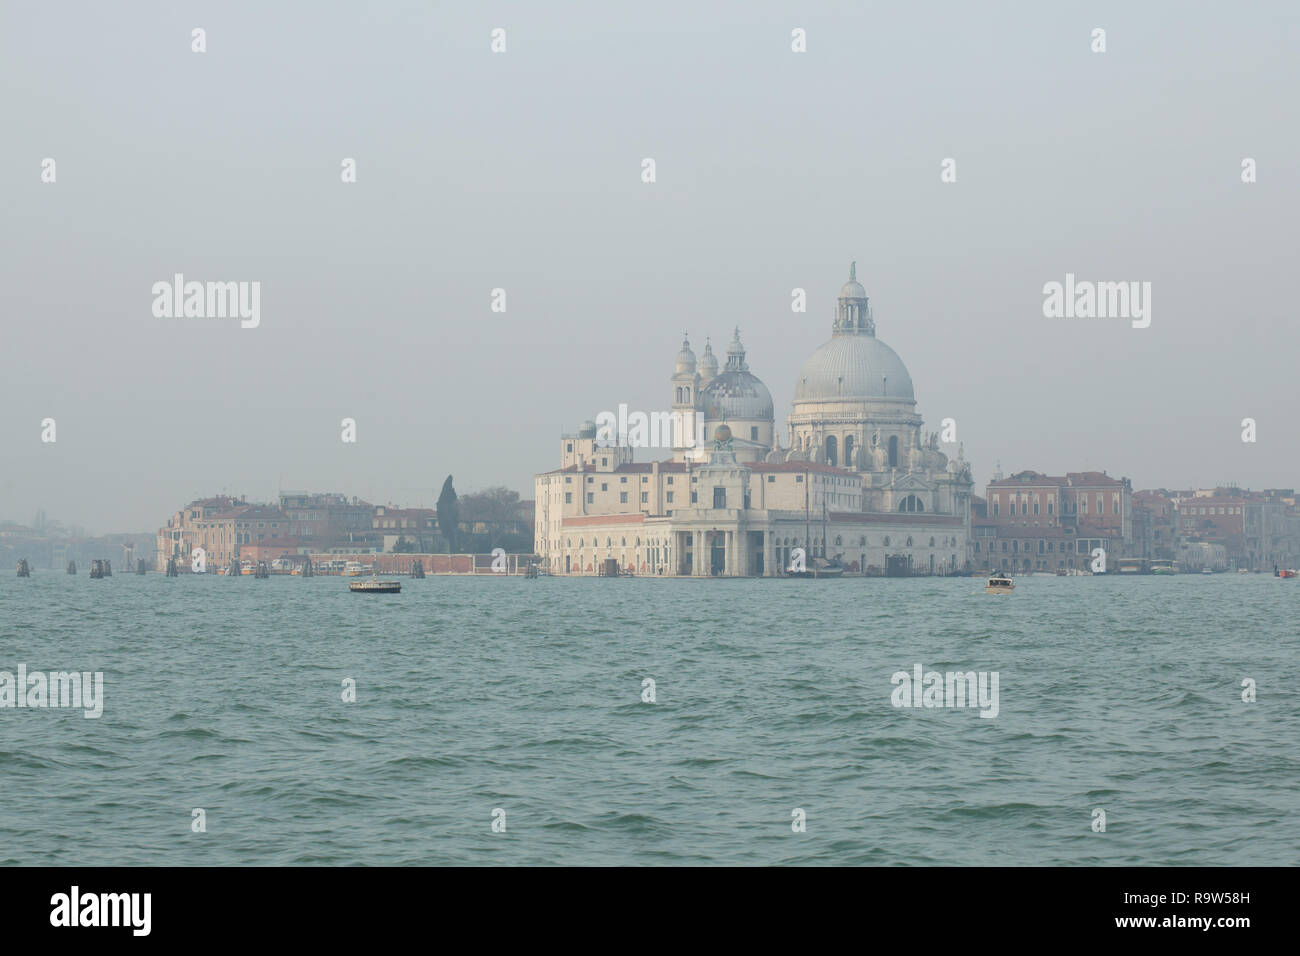 Basilica of Santa Maria della Salute (Basilica di Santa Maria della Salute) and the Venetian Lagoon (Laguna di Venezia) in Venice, Italy, pictured from a boat. Stock Photo